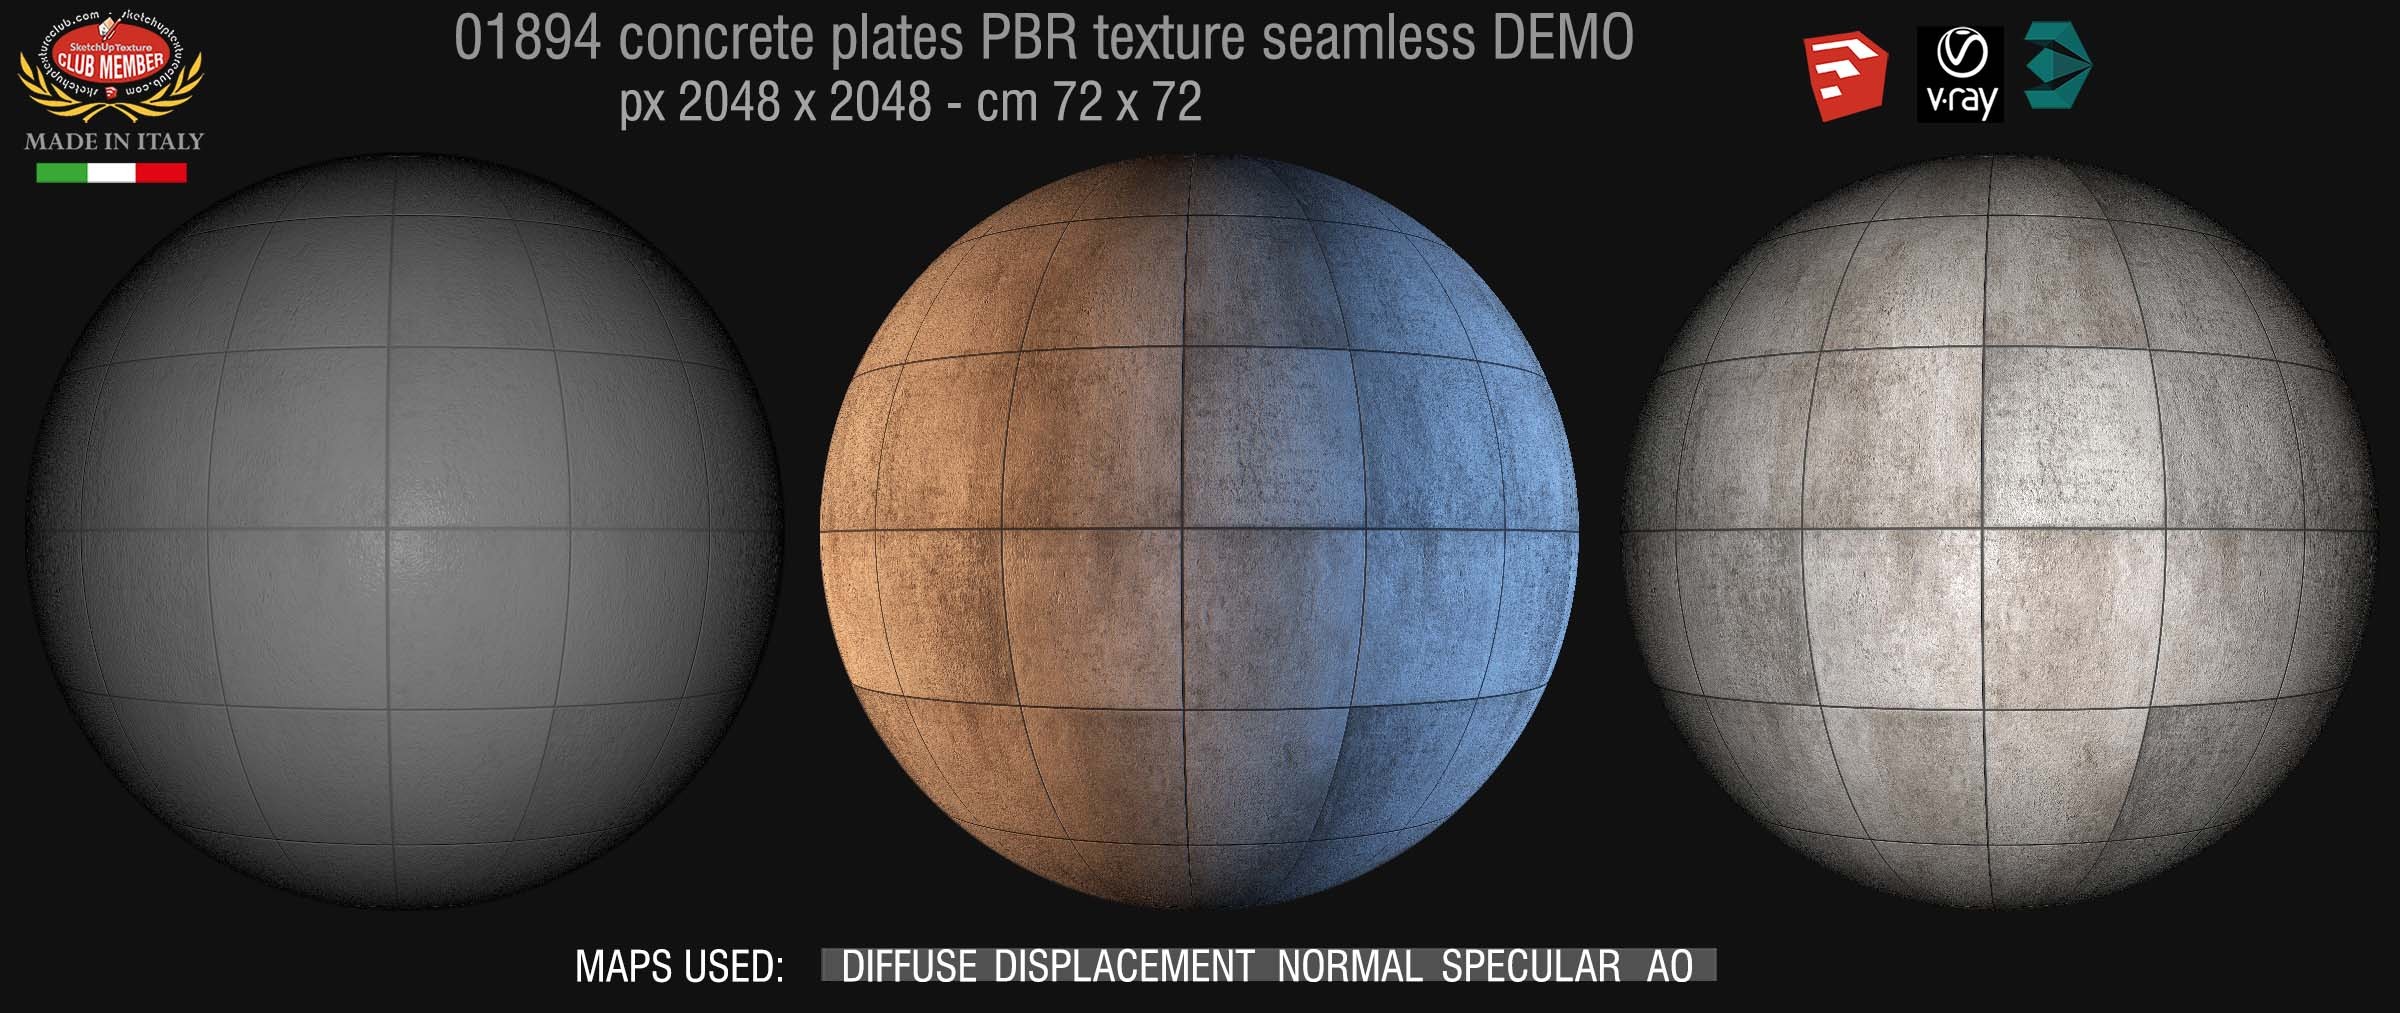 01894 tadao ando concrete plates PBR texture seamless DEMO